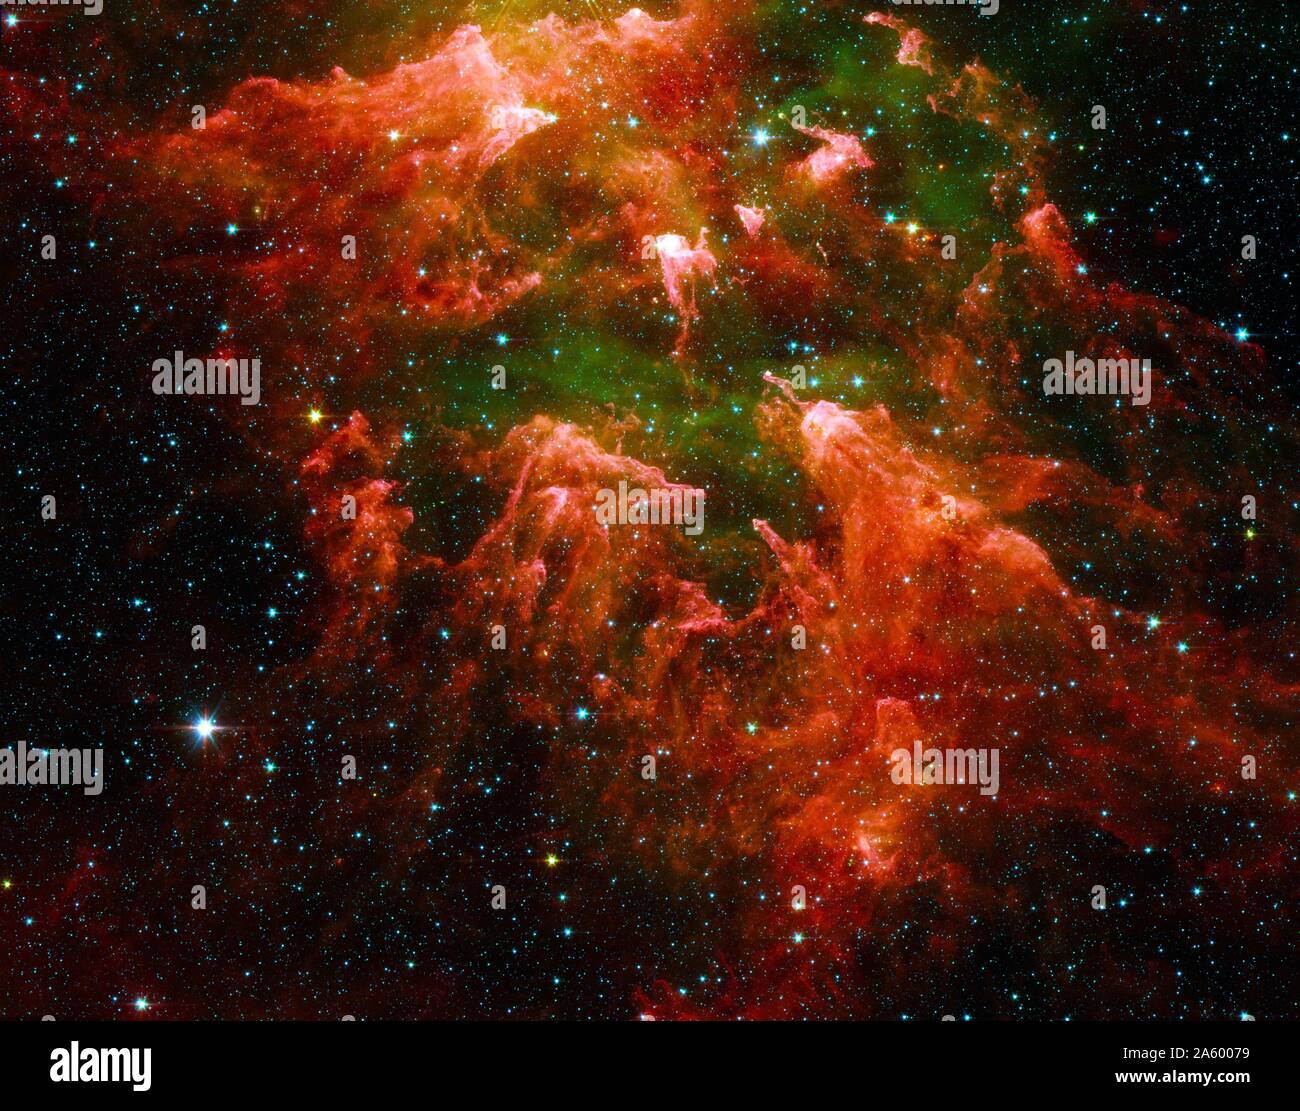 A sud la regione del montante della stella-regione di formatura chiamato Carina Nebula, presa dal telescopio spaziale Spitzer. Datata 2003 Foto Stock